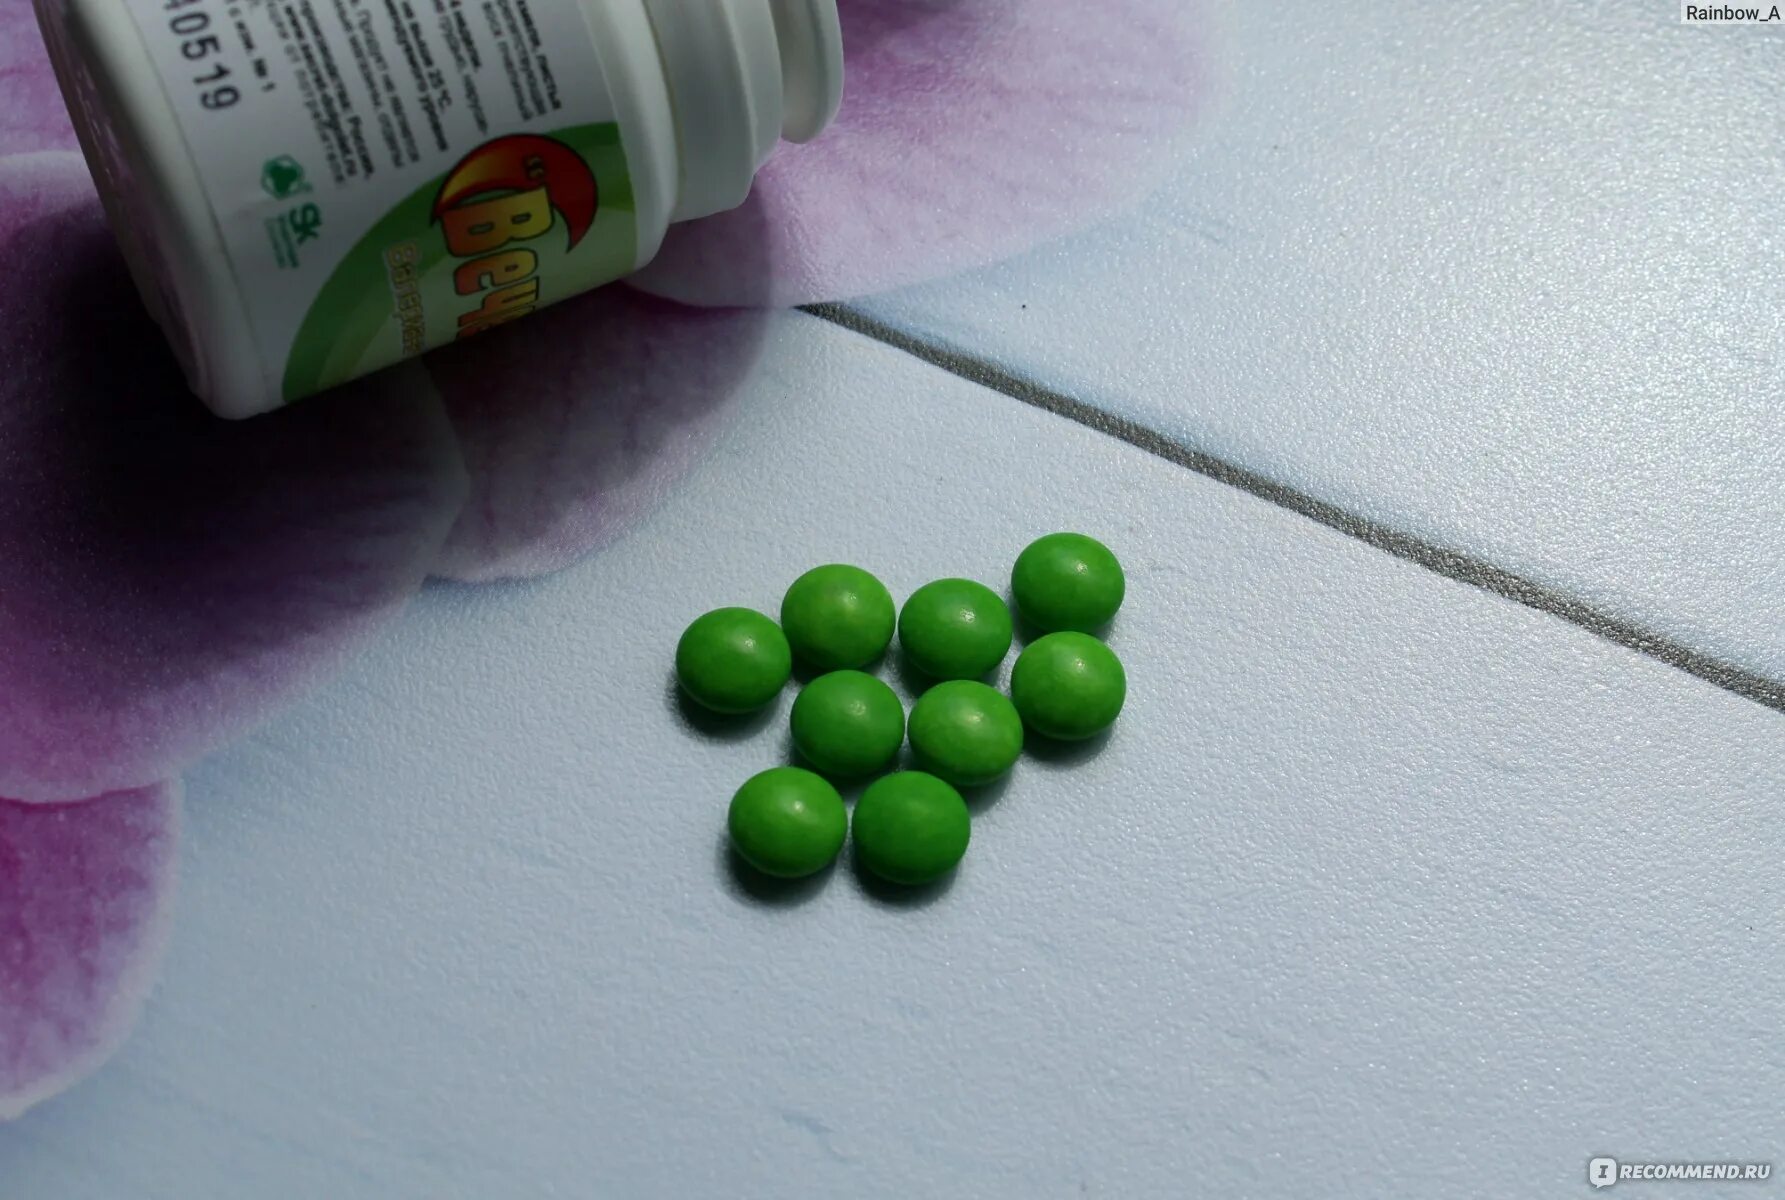 Маленькие зеленые таблетки. Зеленые успокаивающие таблетки. Маленькие зеленые таблетки успокоительные. Маленькие зелёные талетки. Зелена успокоительное